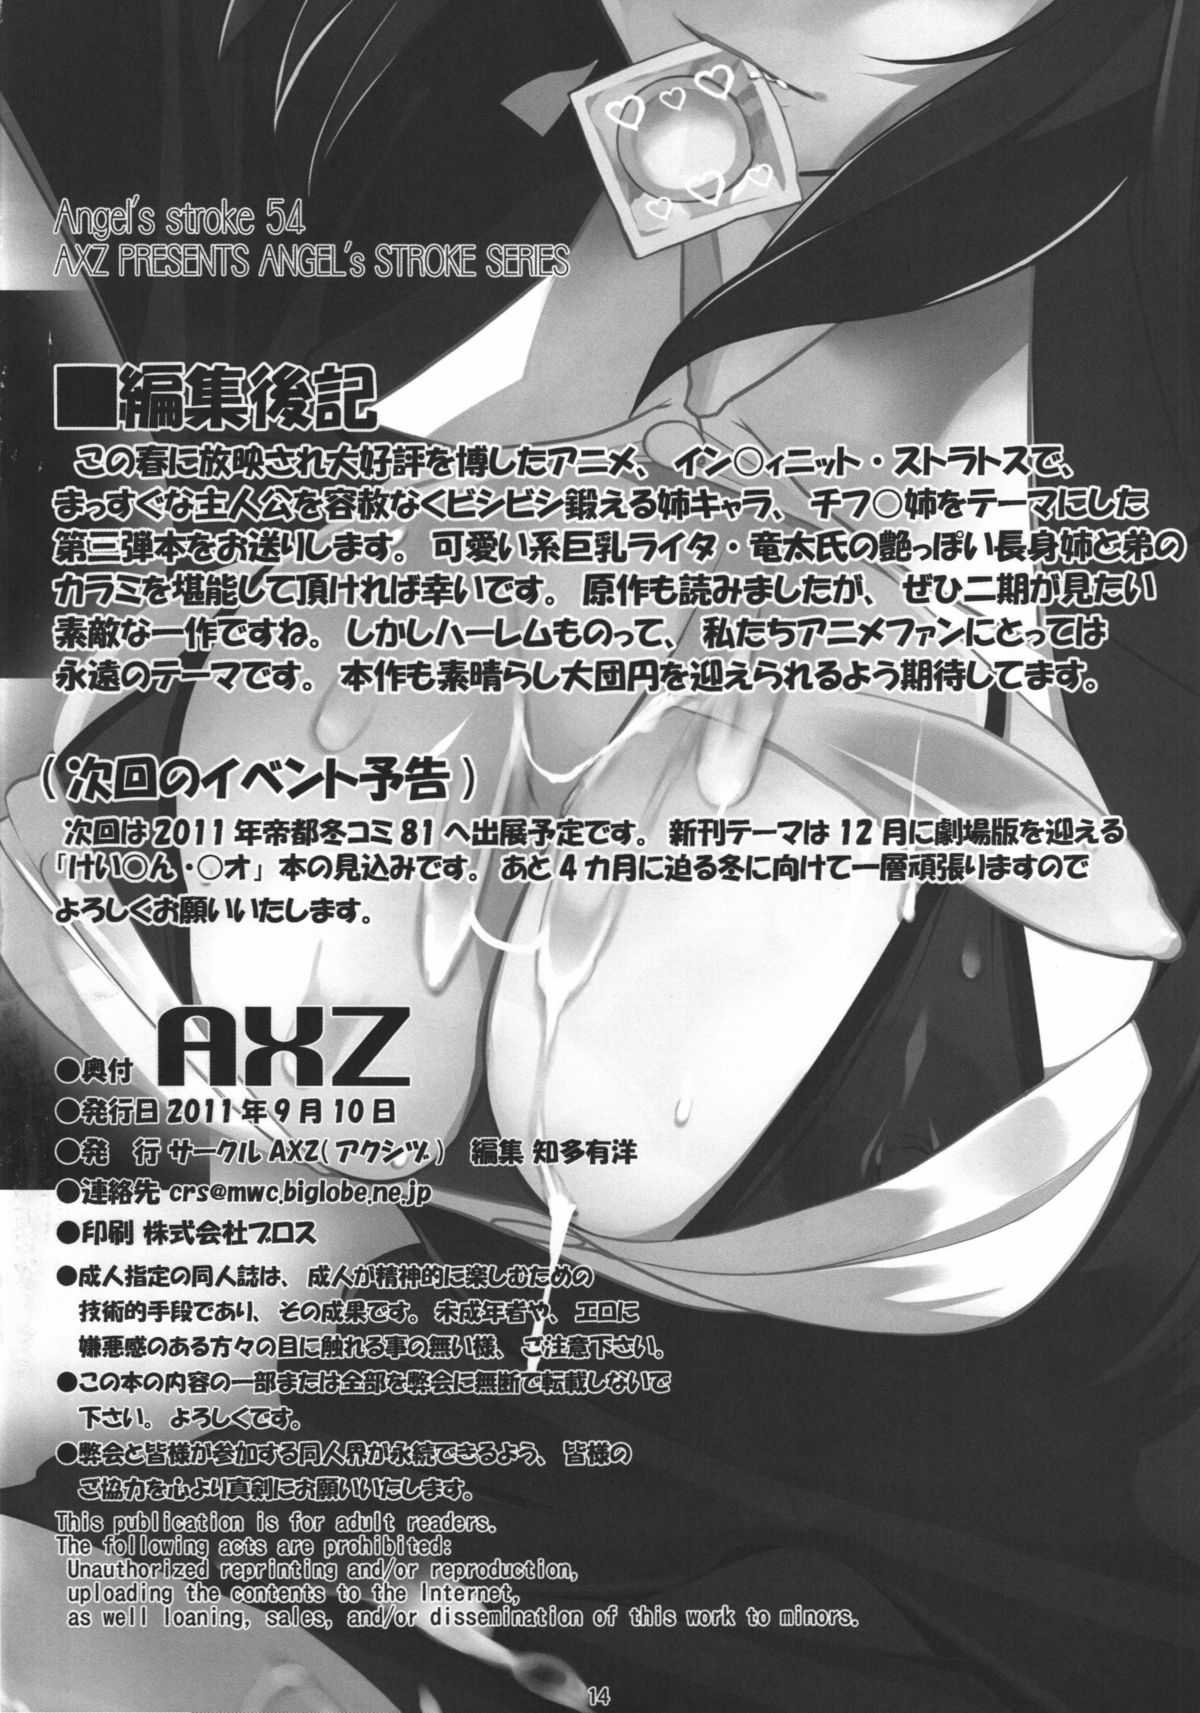 [AXZ (Ryuuta)] Infinite Chifu○nee! Angel&#039;s stroke 54 (Infinite Stratos)[English][desudesu] 